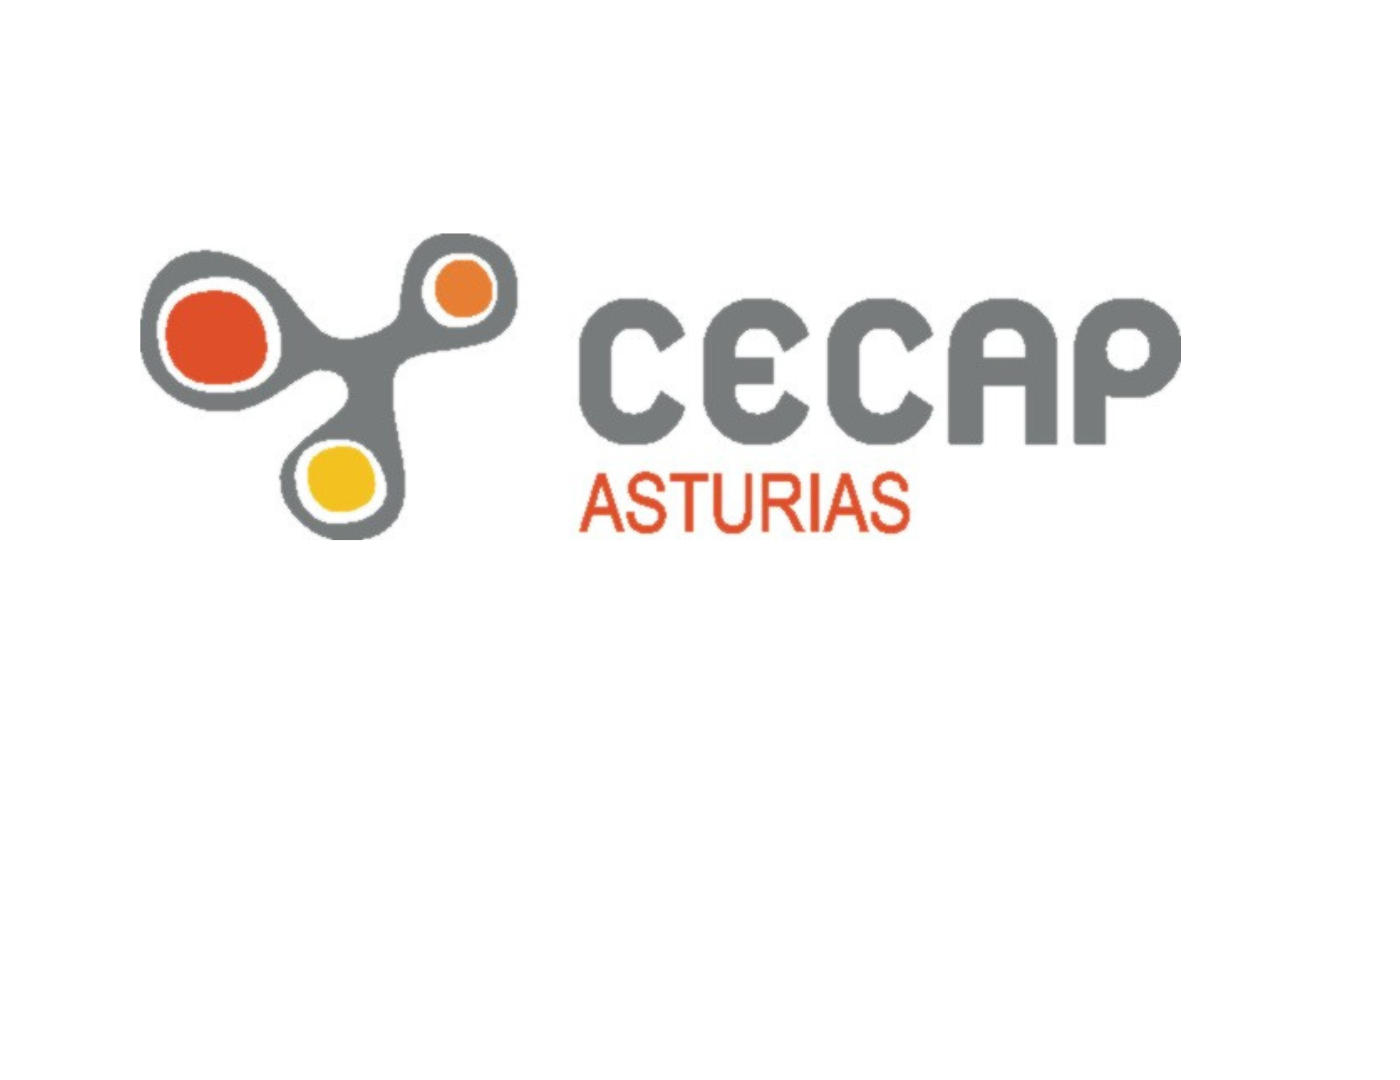 CECAP - ASTURIAS